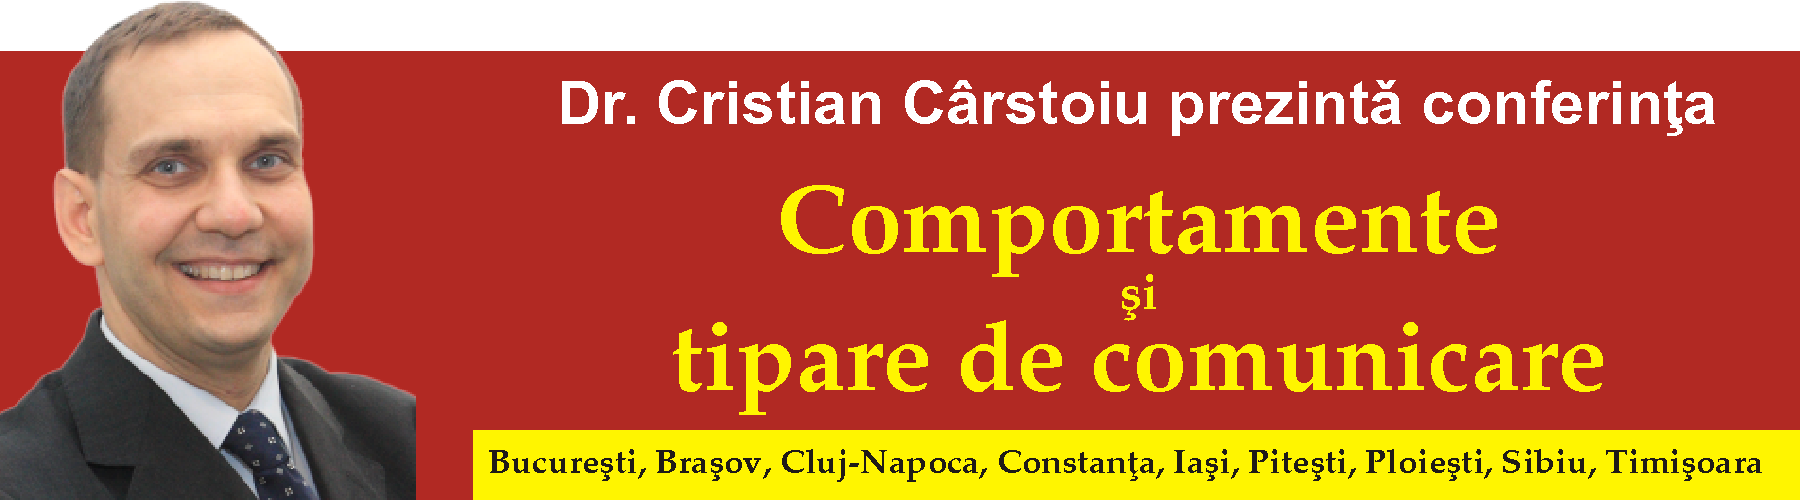 Vă invit la conferinţa "Comportamente şi tipare de comunicare" susţinută de Dr. Cristian Cârstoiu